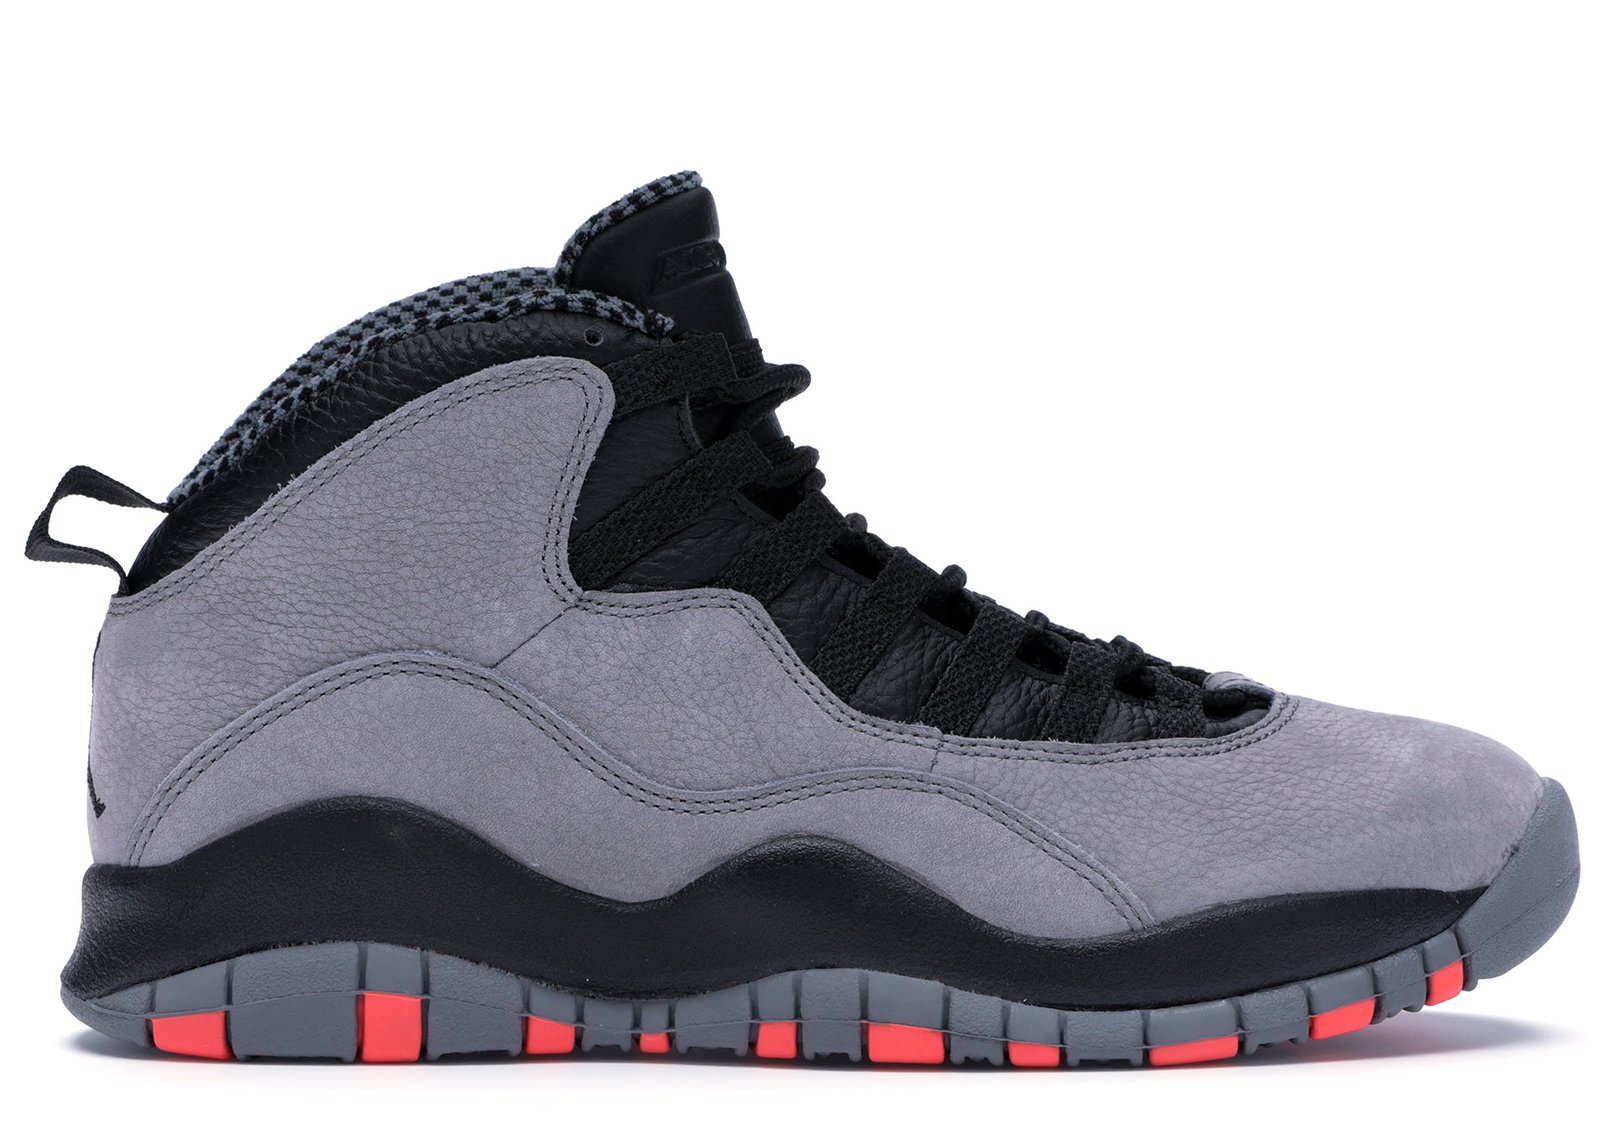 Jordan 10 Retro Cool Grey sneakers